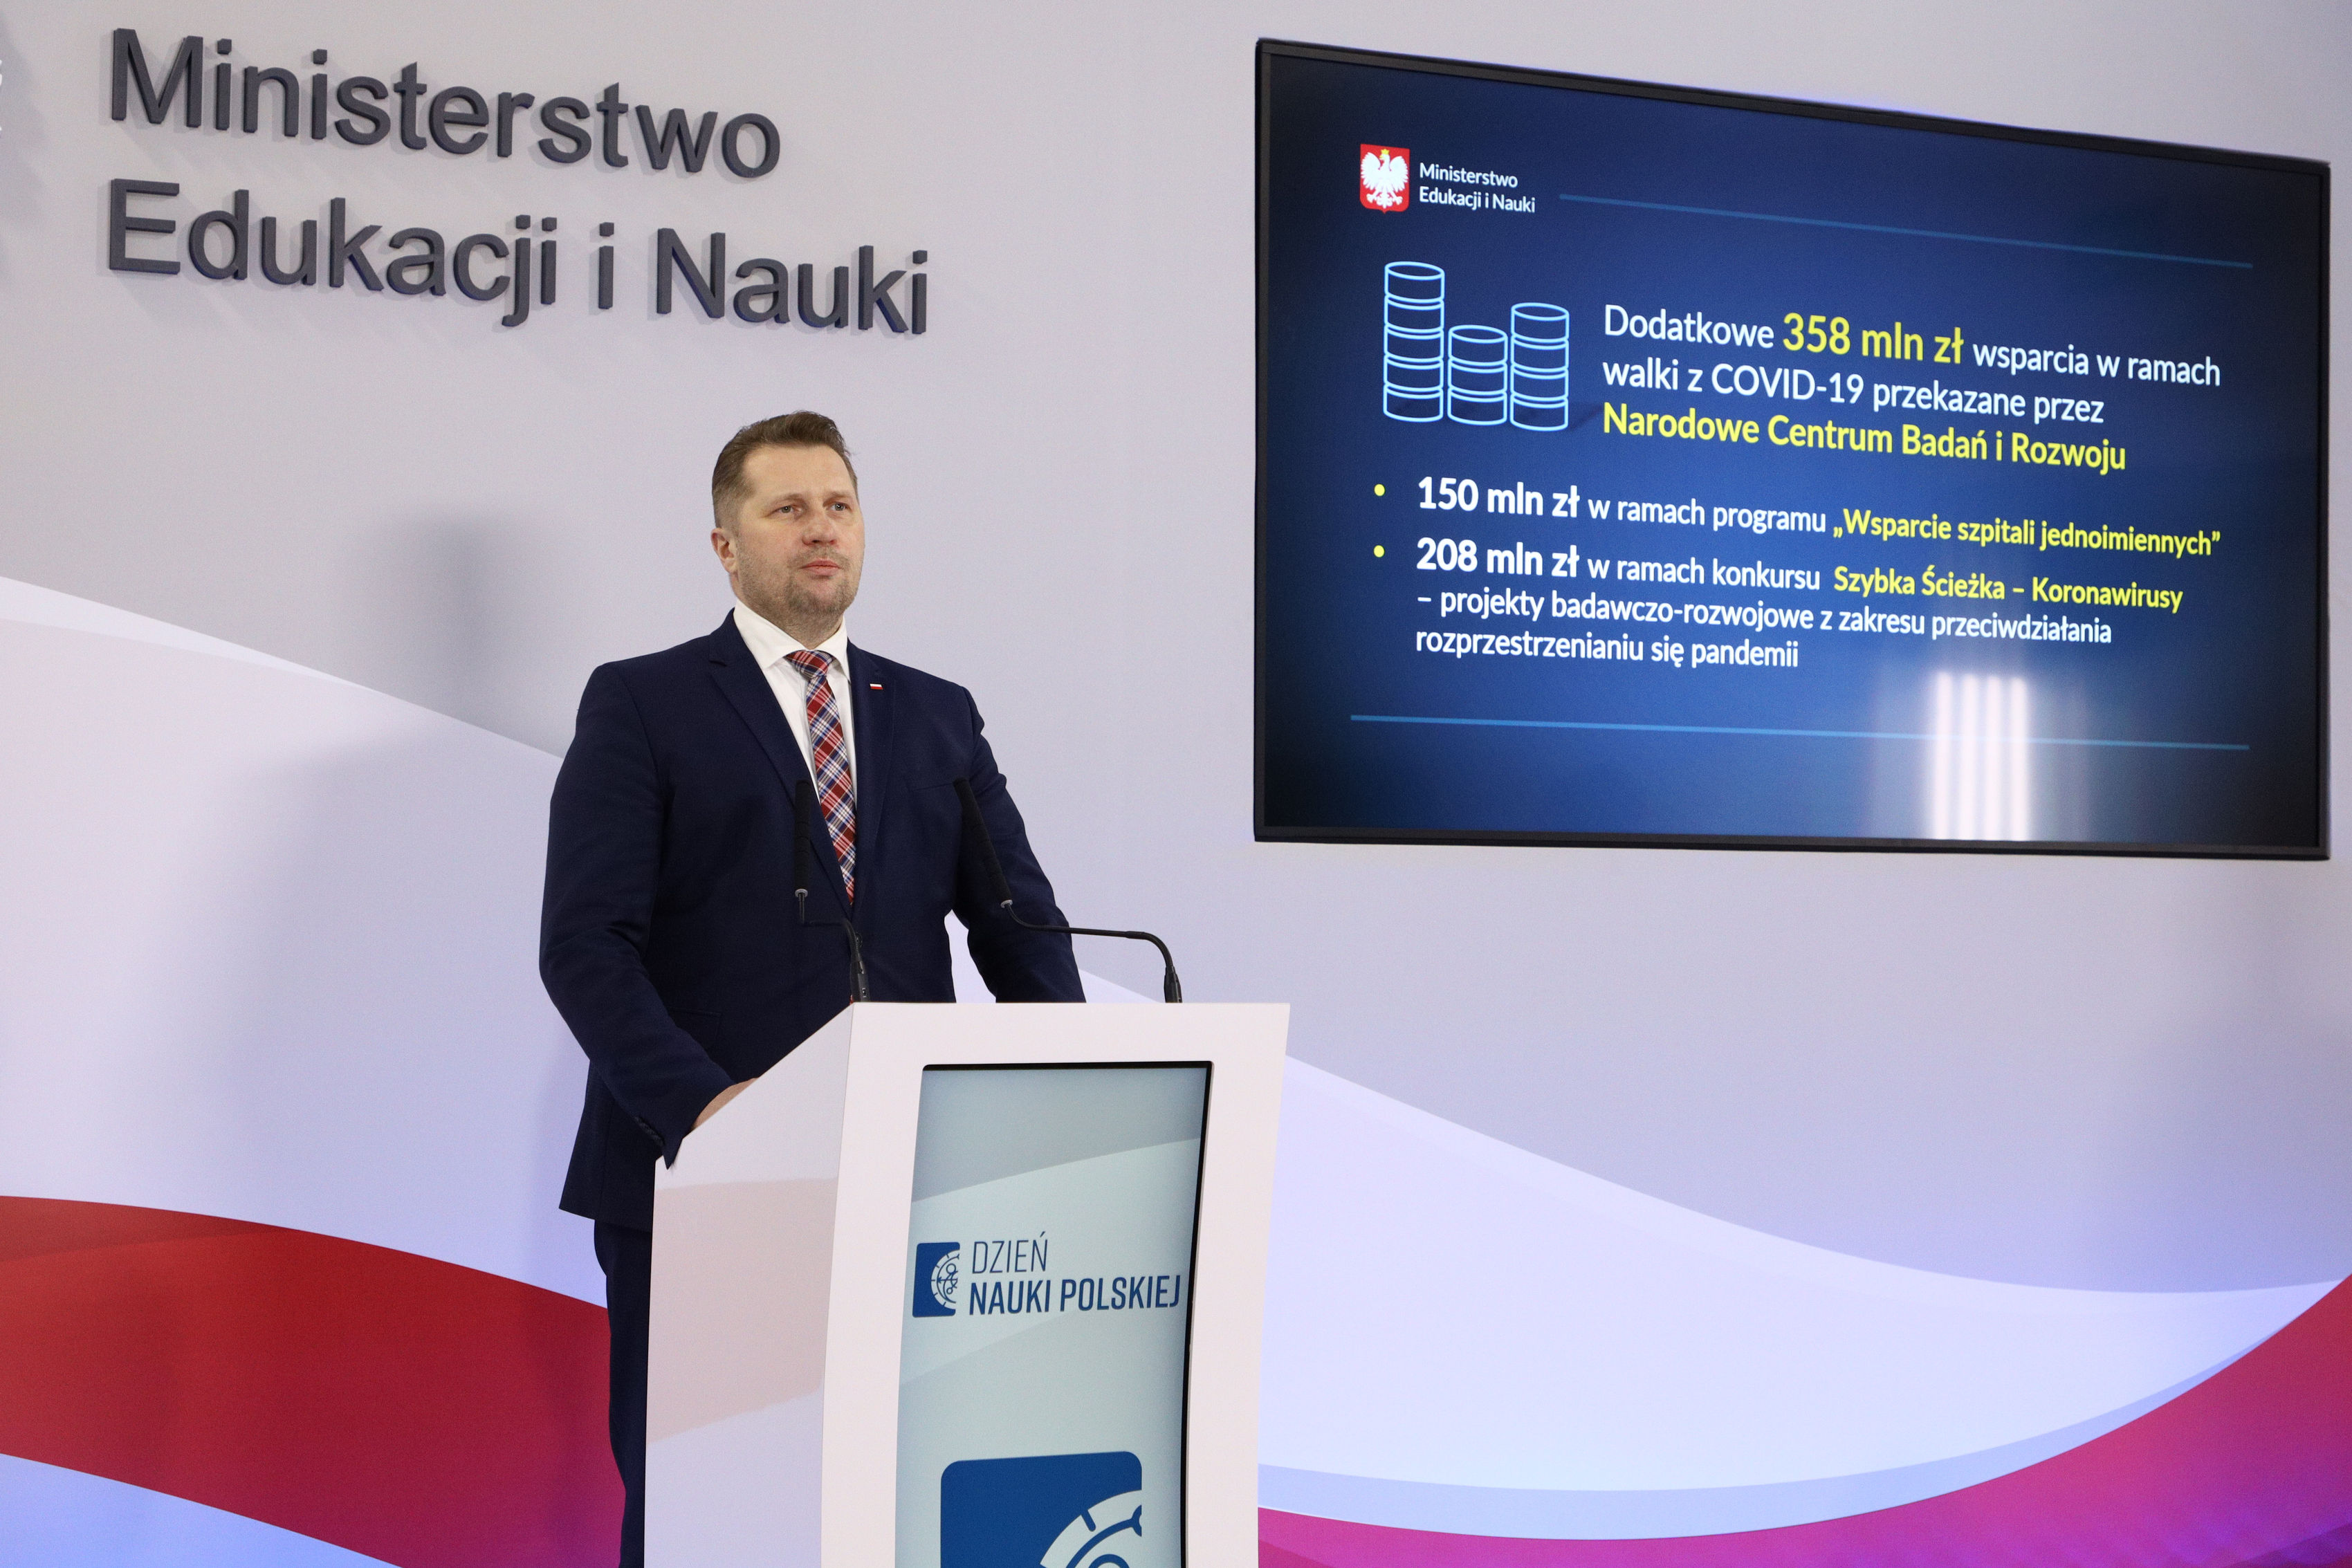 Zdjęcie z konferencji Ministra Edukacji i Nauki Przemysława Czarnka na temat: Dzień Nauki Polskiej – podsumowanie sukcesów 2020 r.